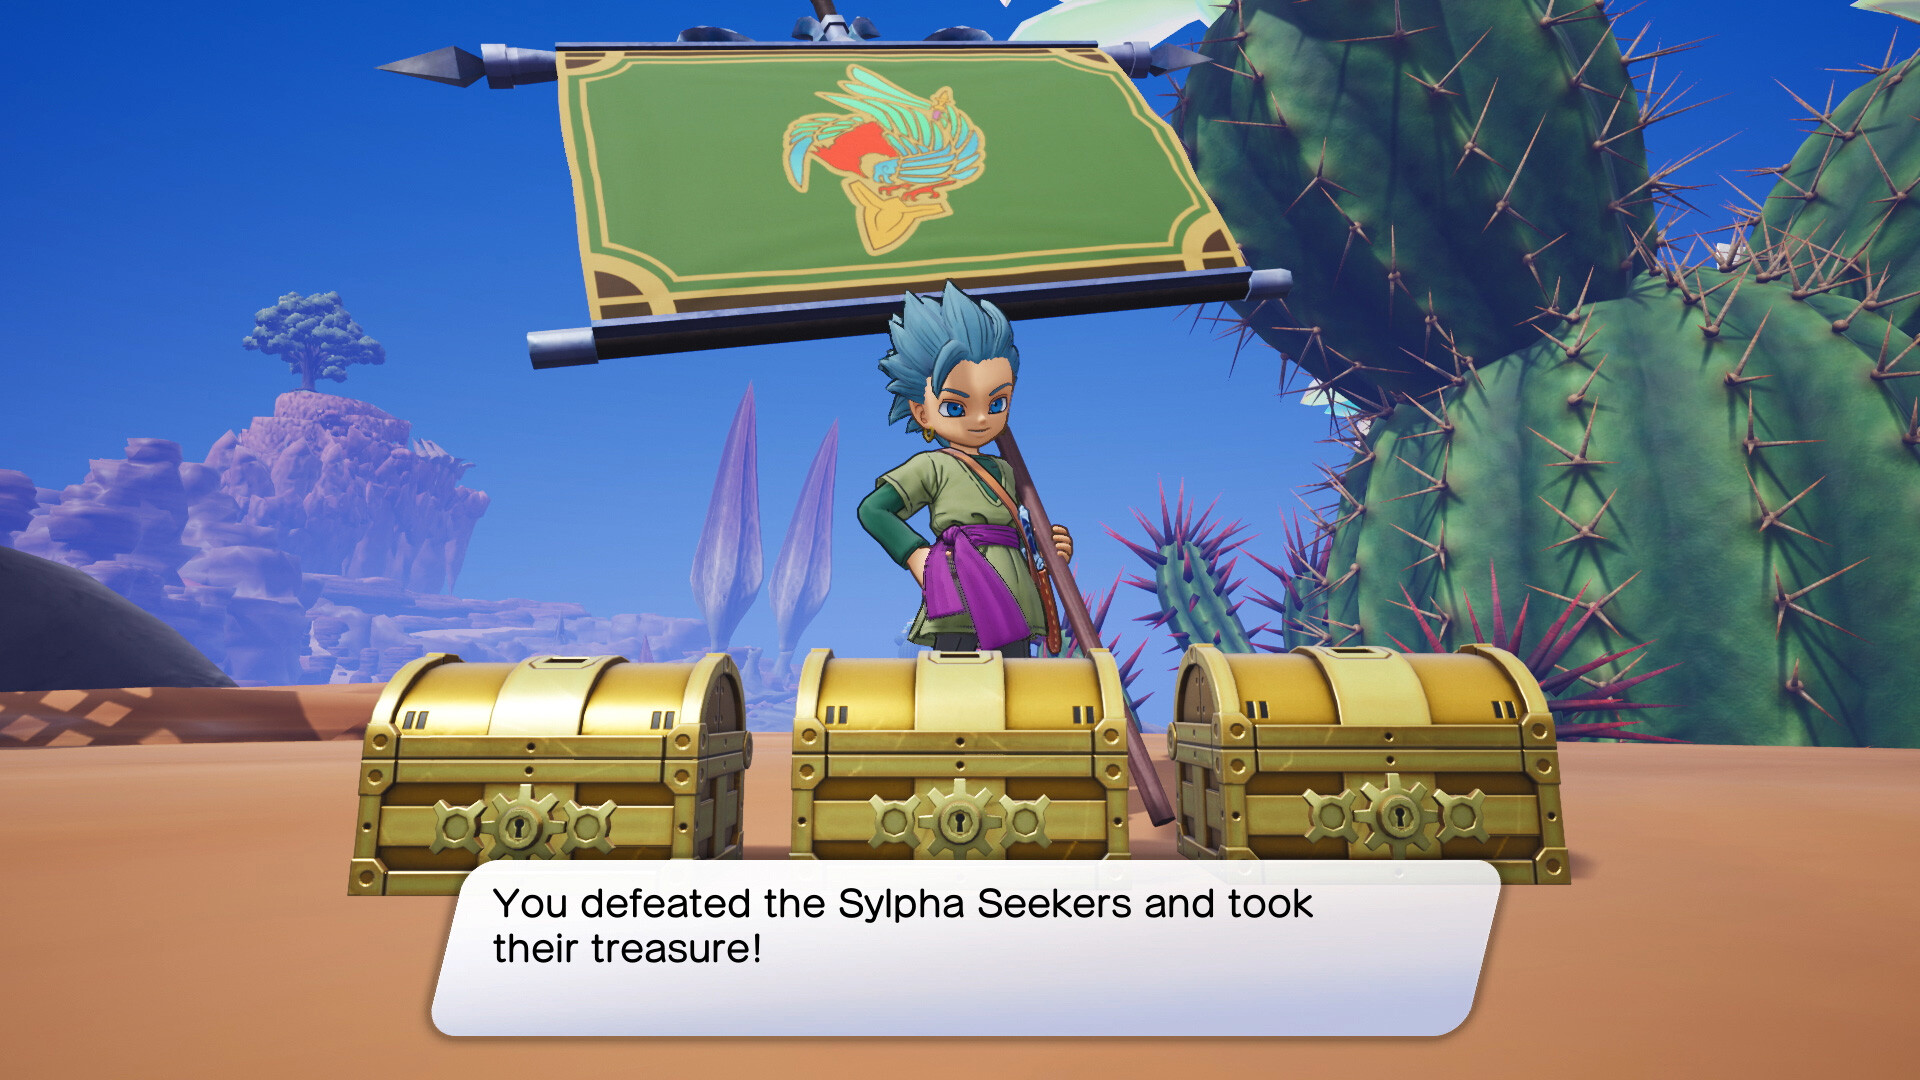 Dragon Quest Treasures Review